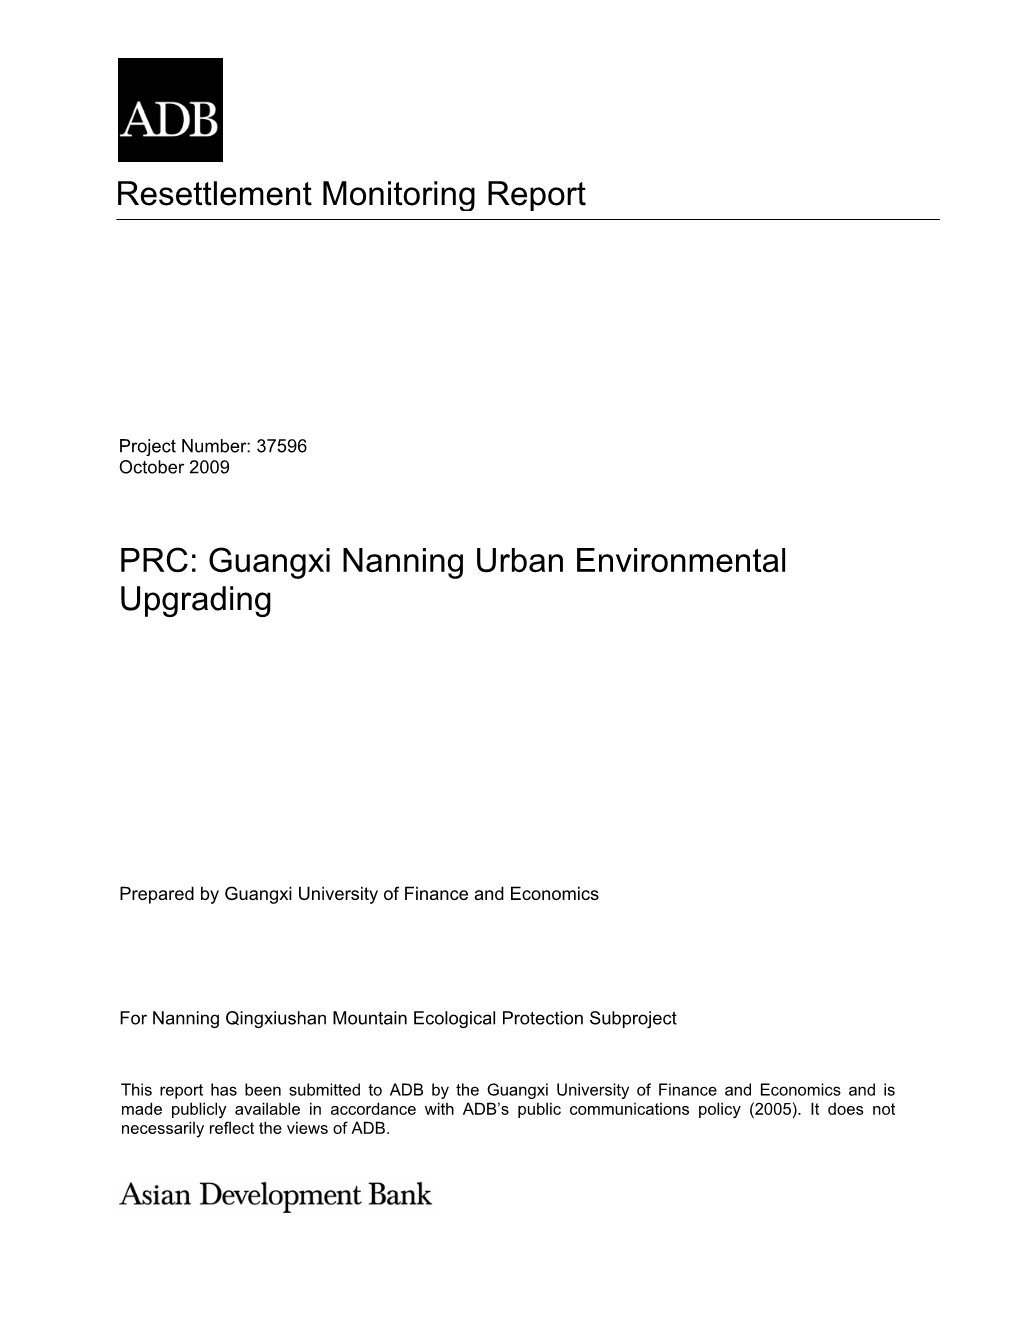 Guangxi Nanning Urban Environmental Upgrading